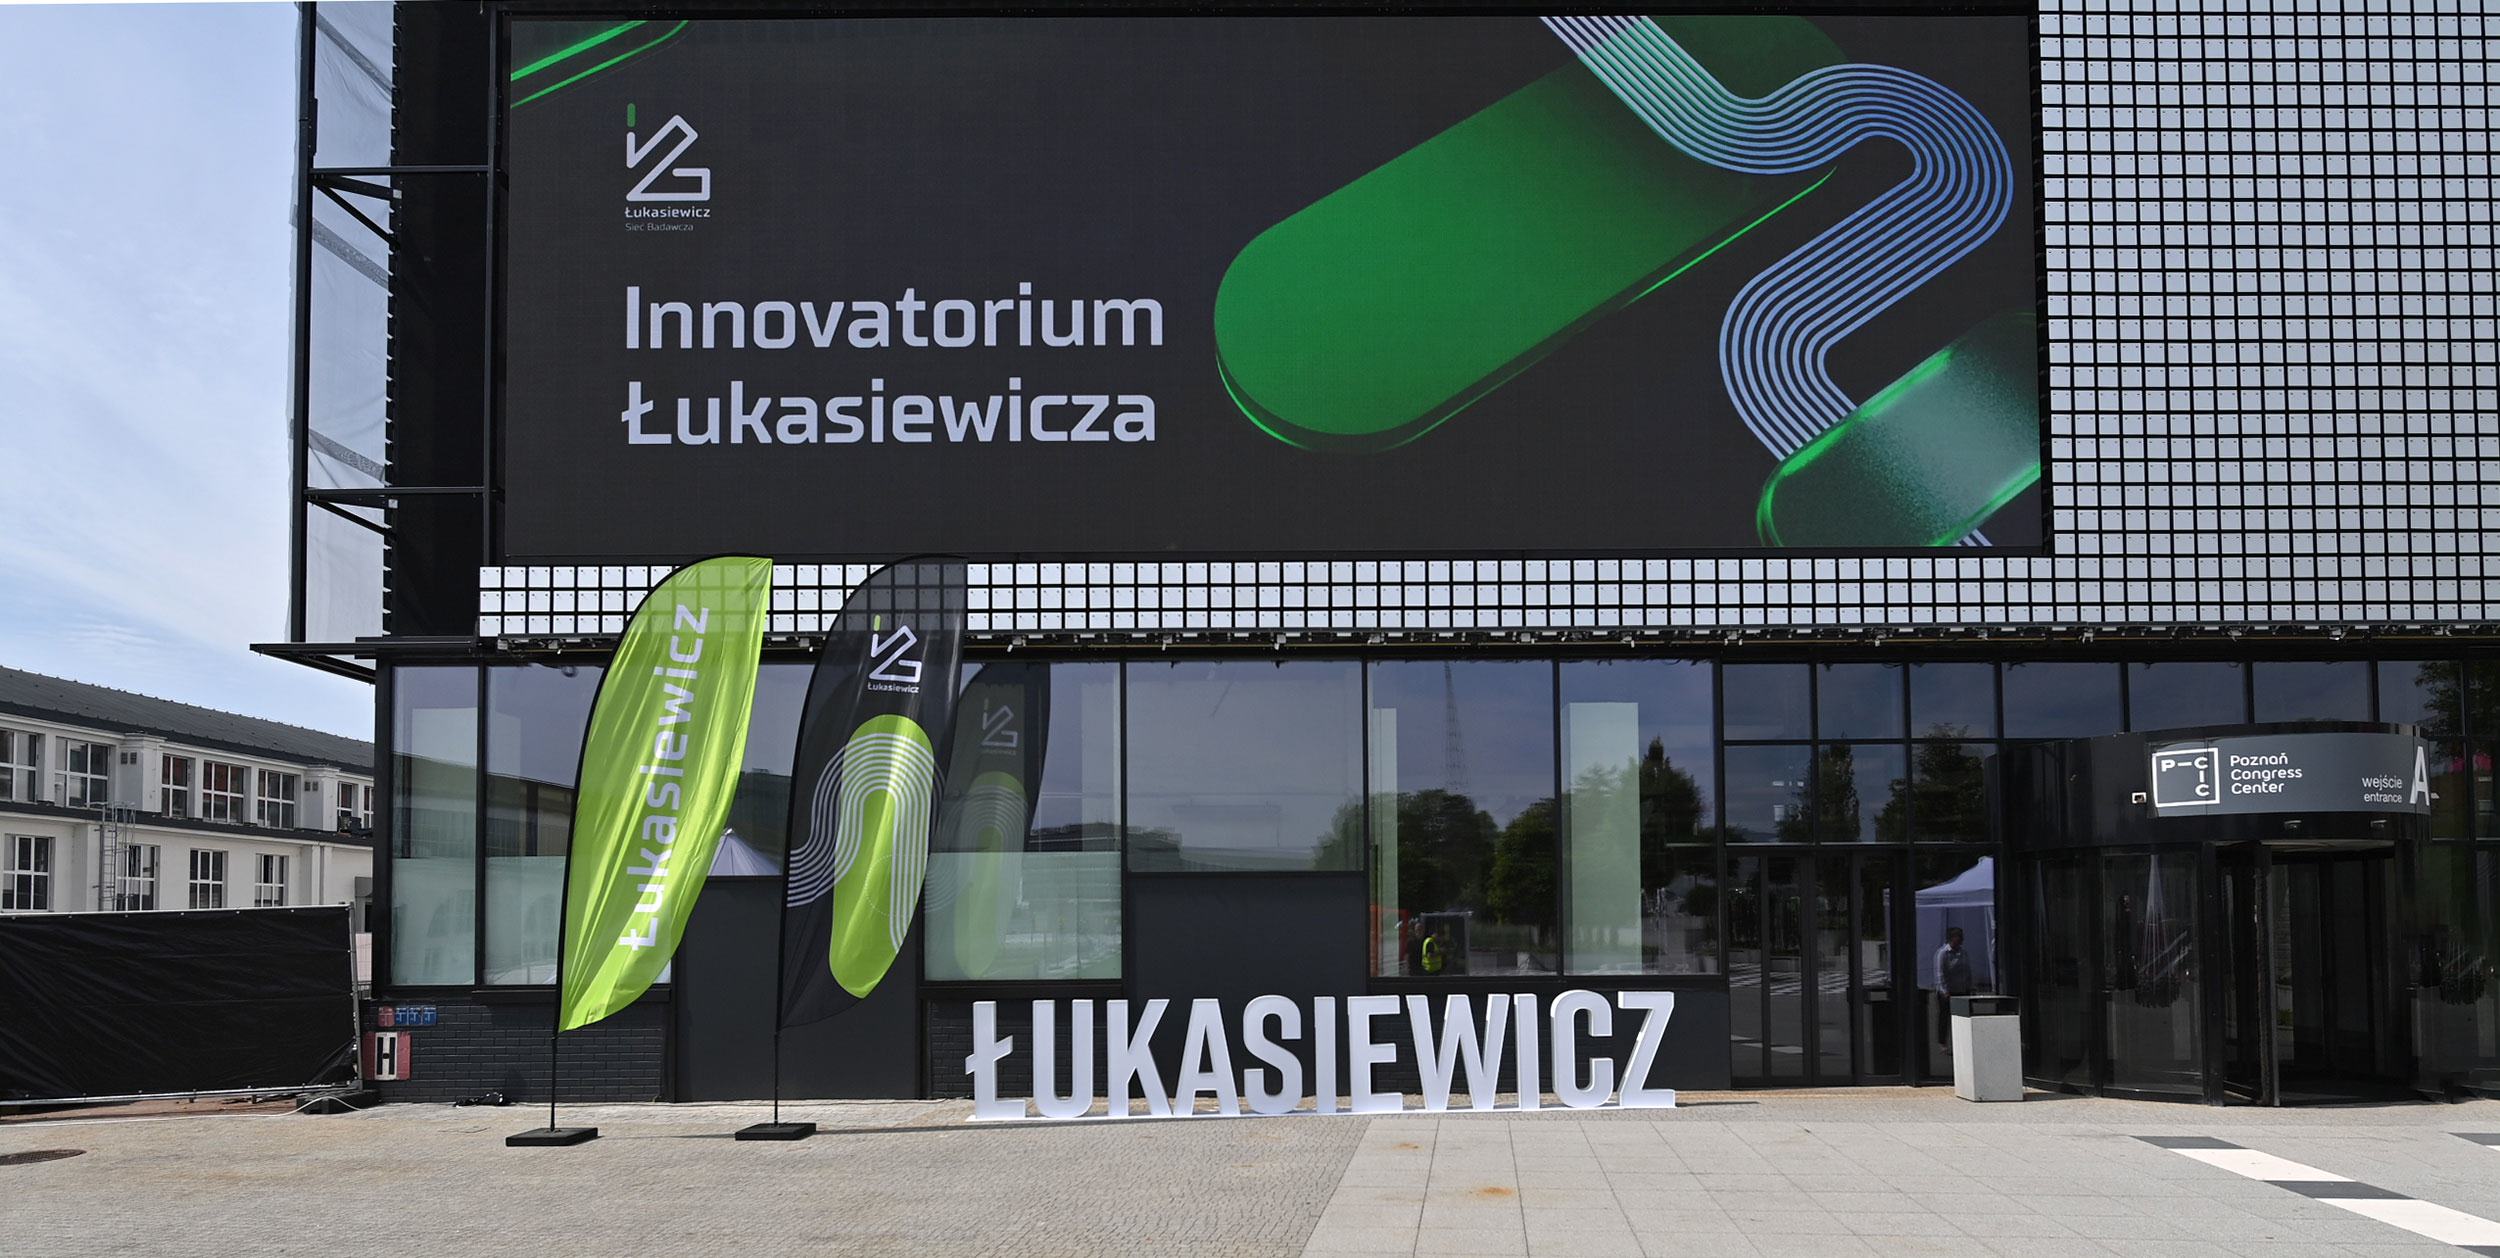 Innovatorium Łukasiewicz